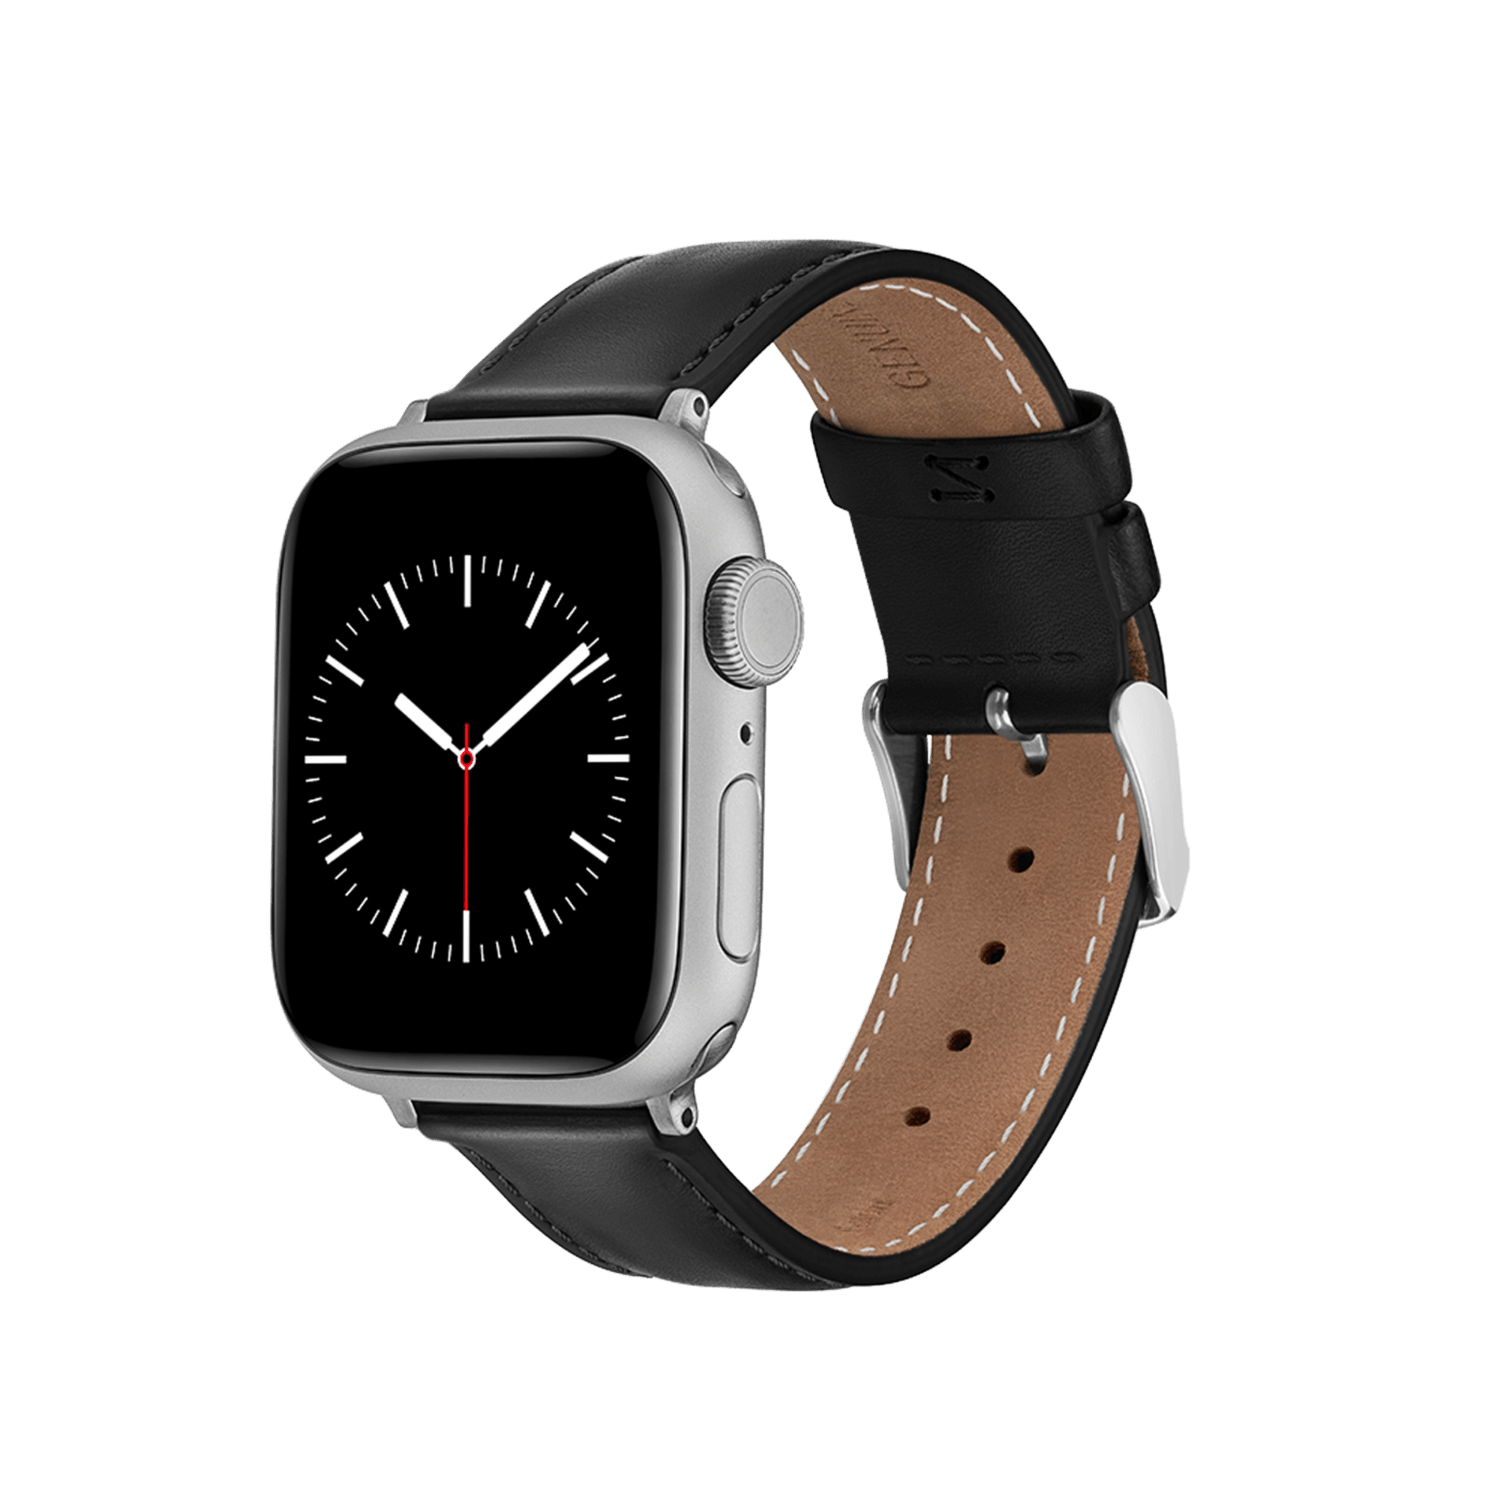 Cinturino per smartwatch. Tipi, design e prezzi dei braccialetti